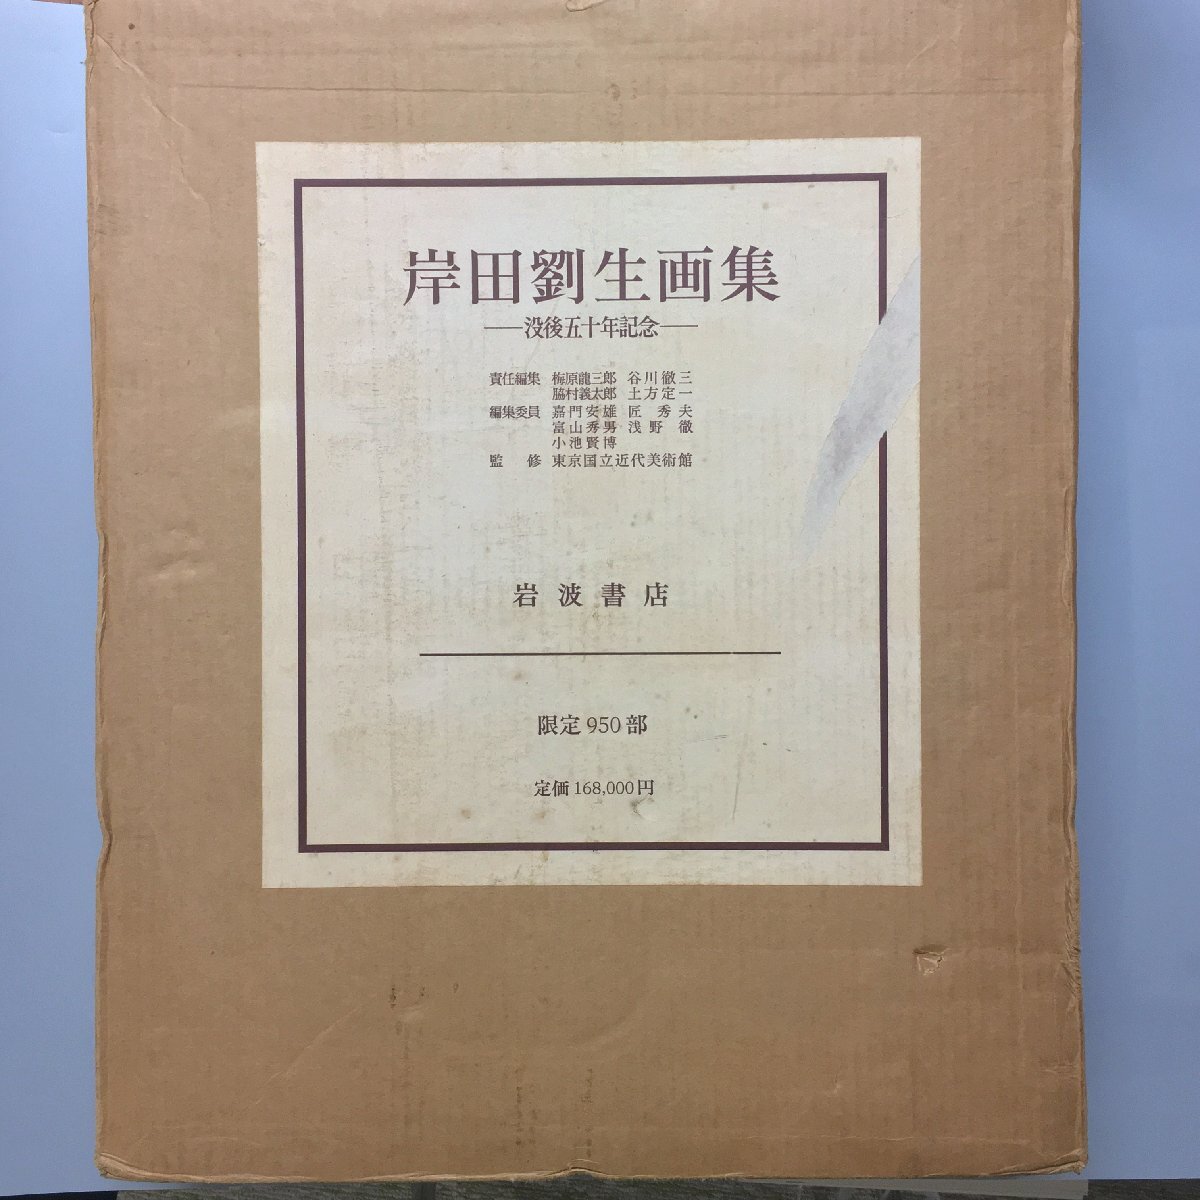 बड़े प्रारूप वाली पुस्तक किशिदा रयूसेई कला संग्रह: उनकी मृत्यु की 50वीं वर्षगांठ इवानामी शोटेन 950 प्रतियों तक सीमित मूल्य: 168, 000 येन शानदार निश्चित संस्करण सूचीपत्र और टिप्पणी, चित्रकारी, कला पुस्तक, संग्रह, कला पुस्तक